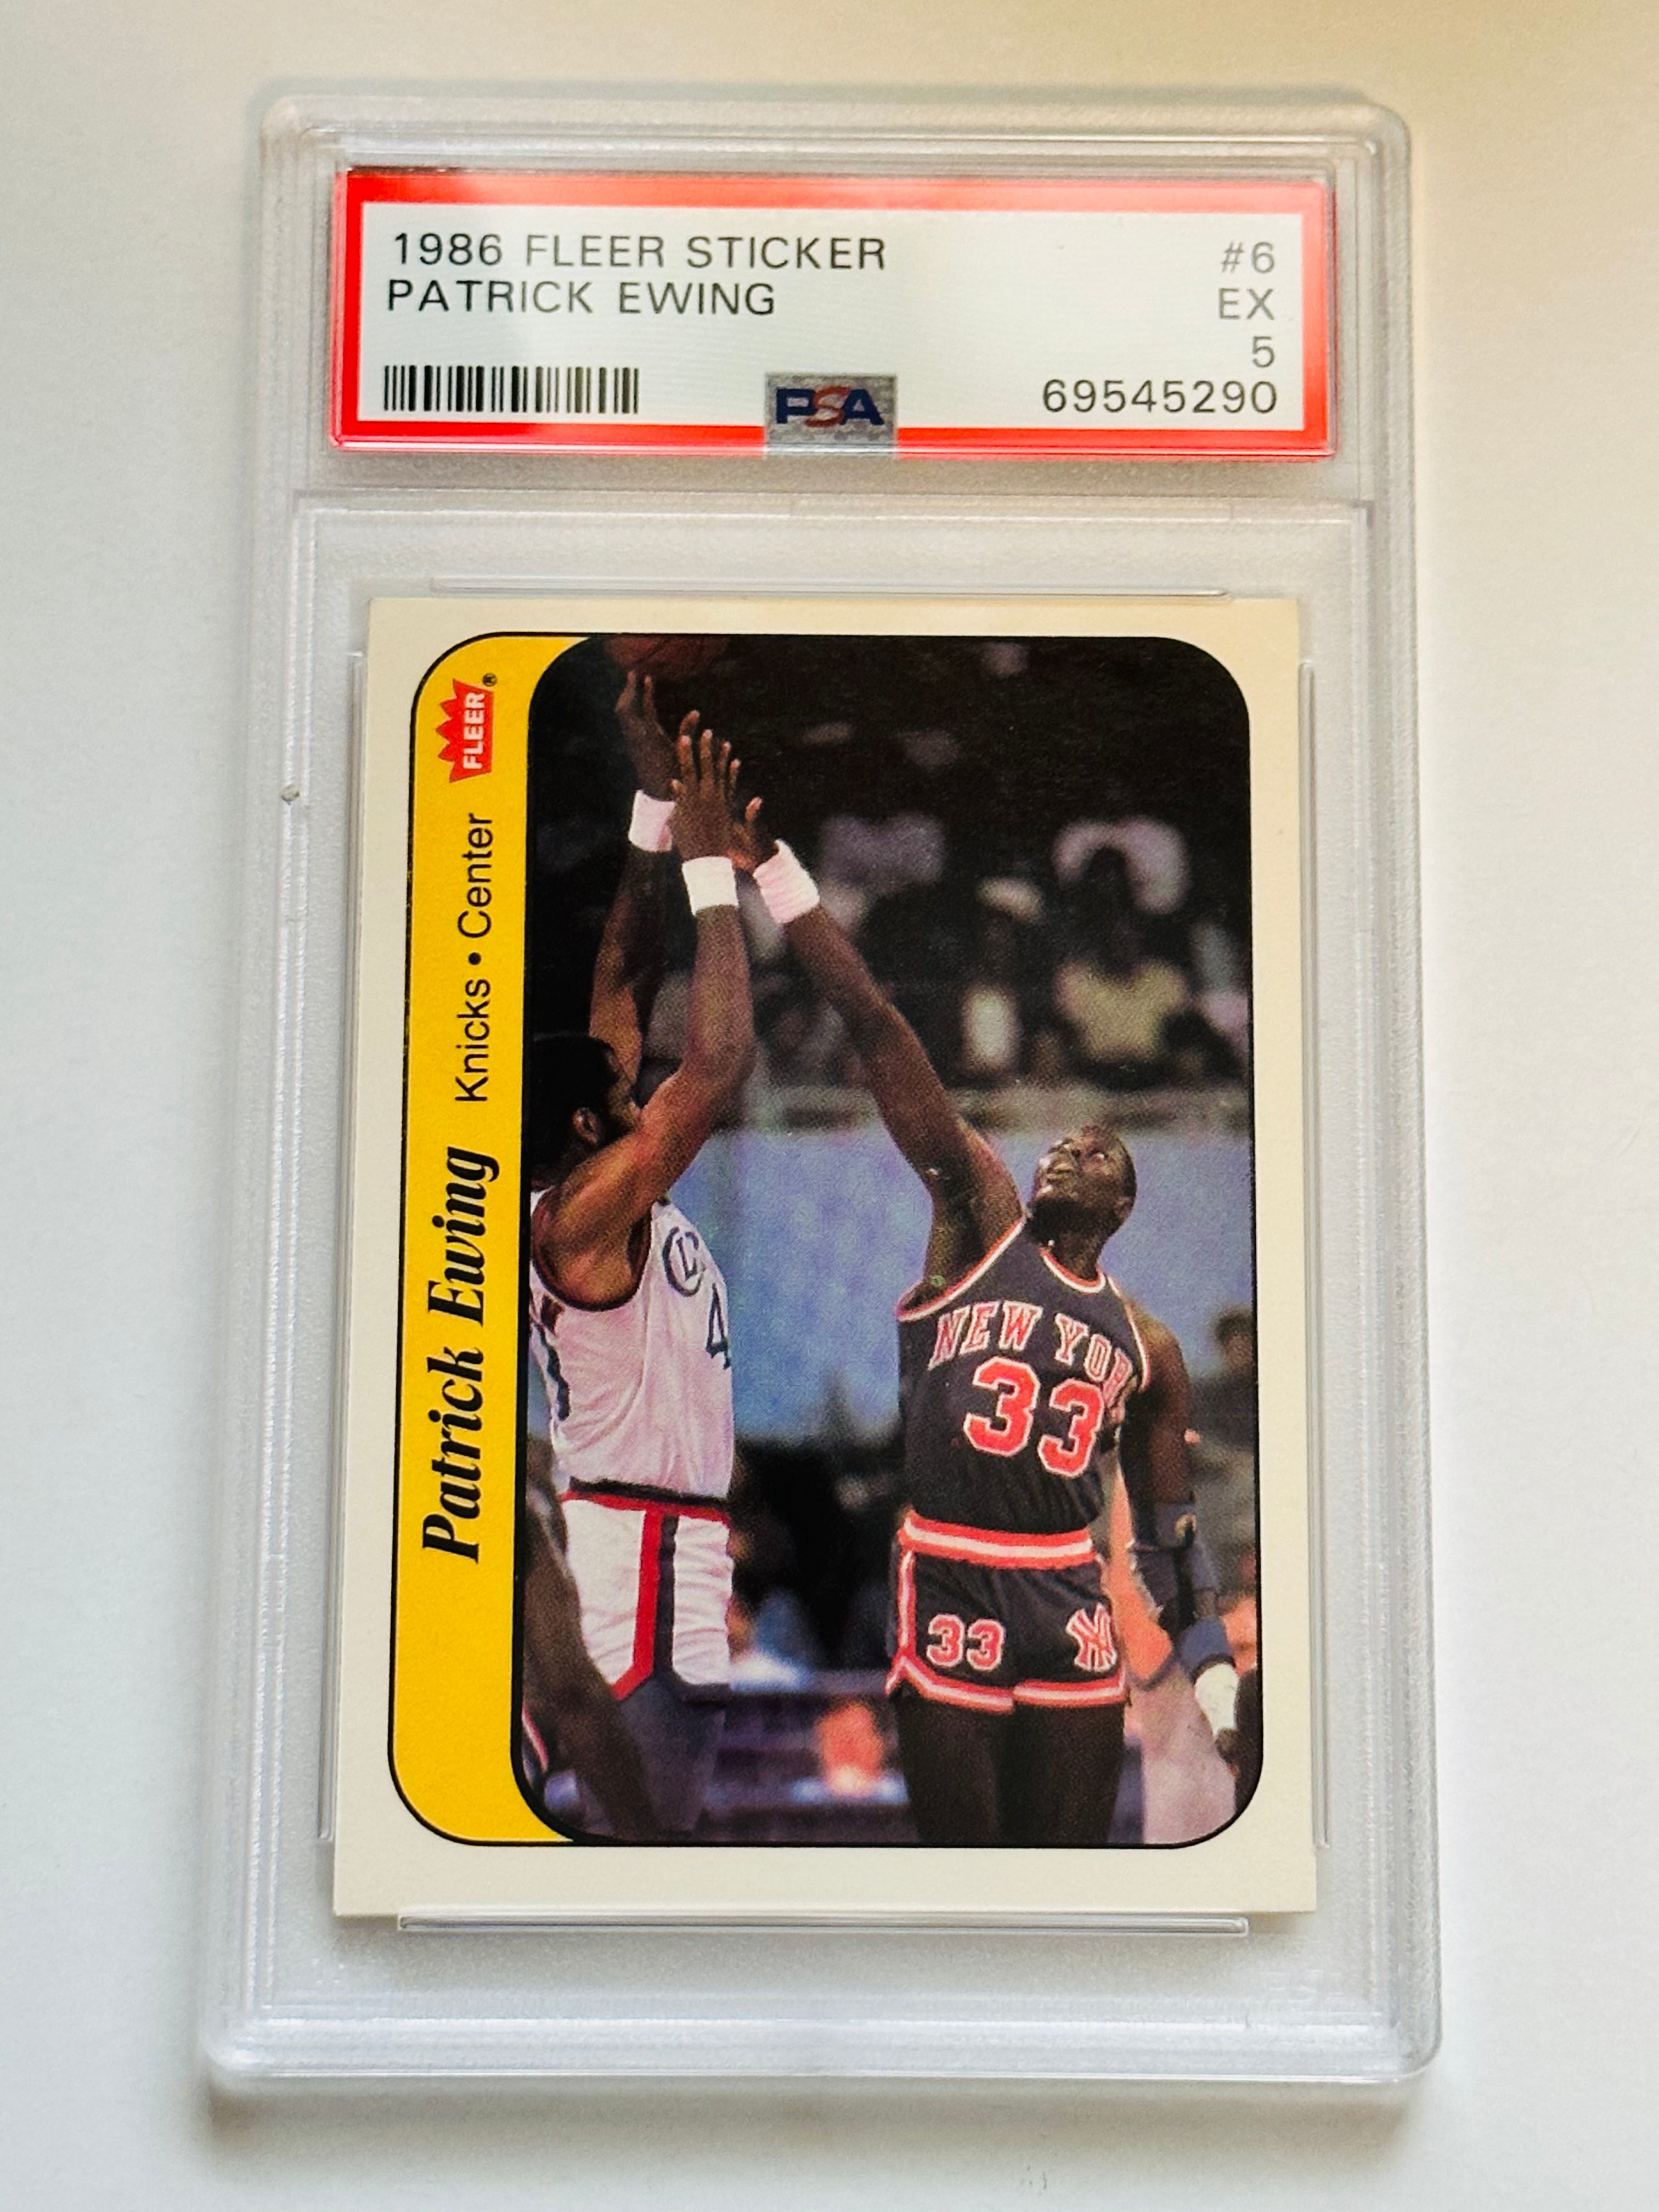 1986 Fleer basketball PSA graded Patrick Ewing high grade sticker card